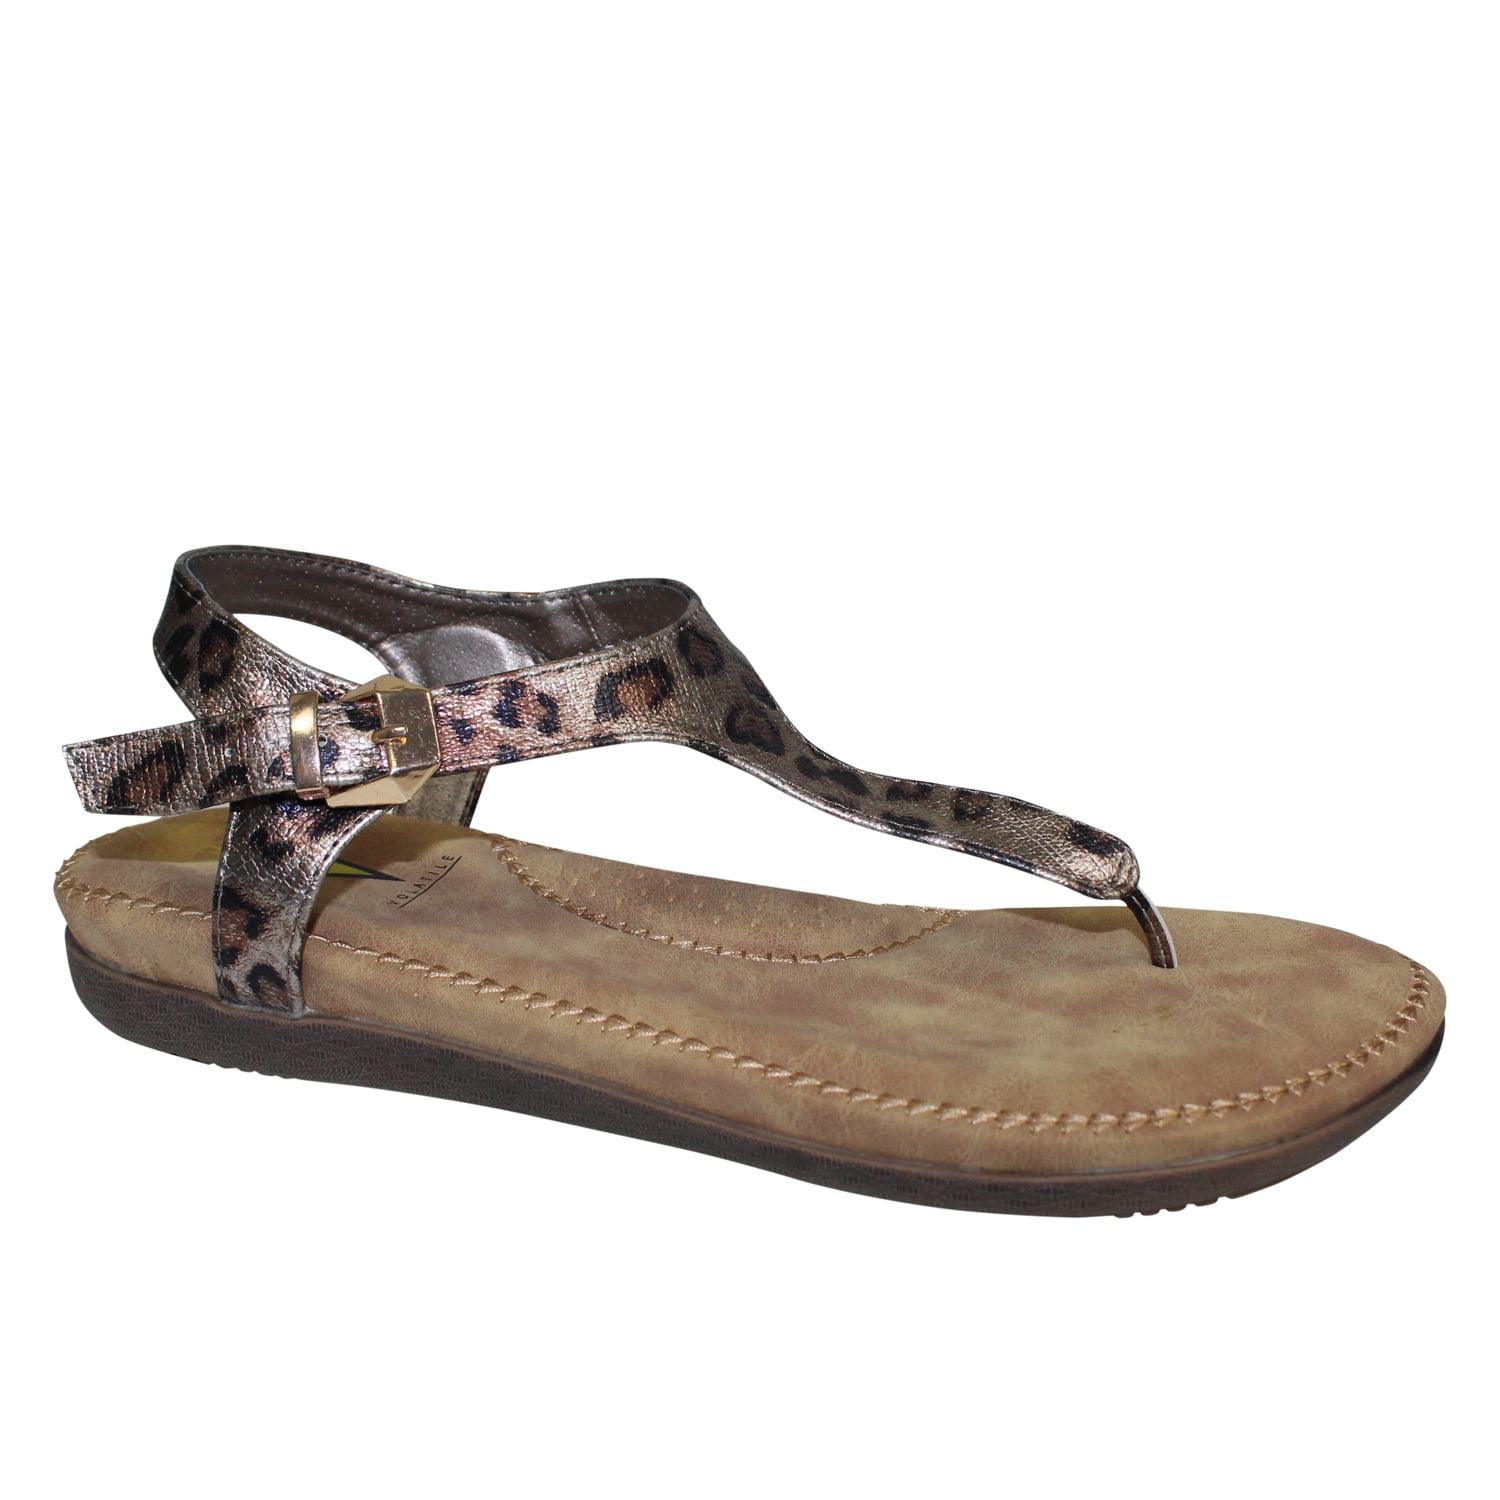 volatile leopard sandals